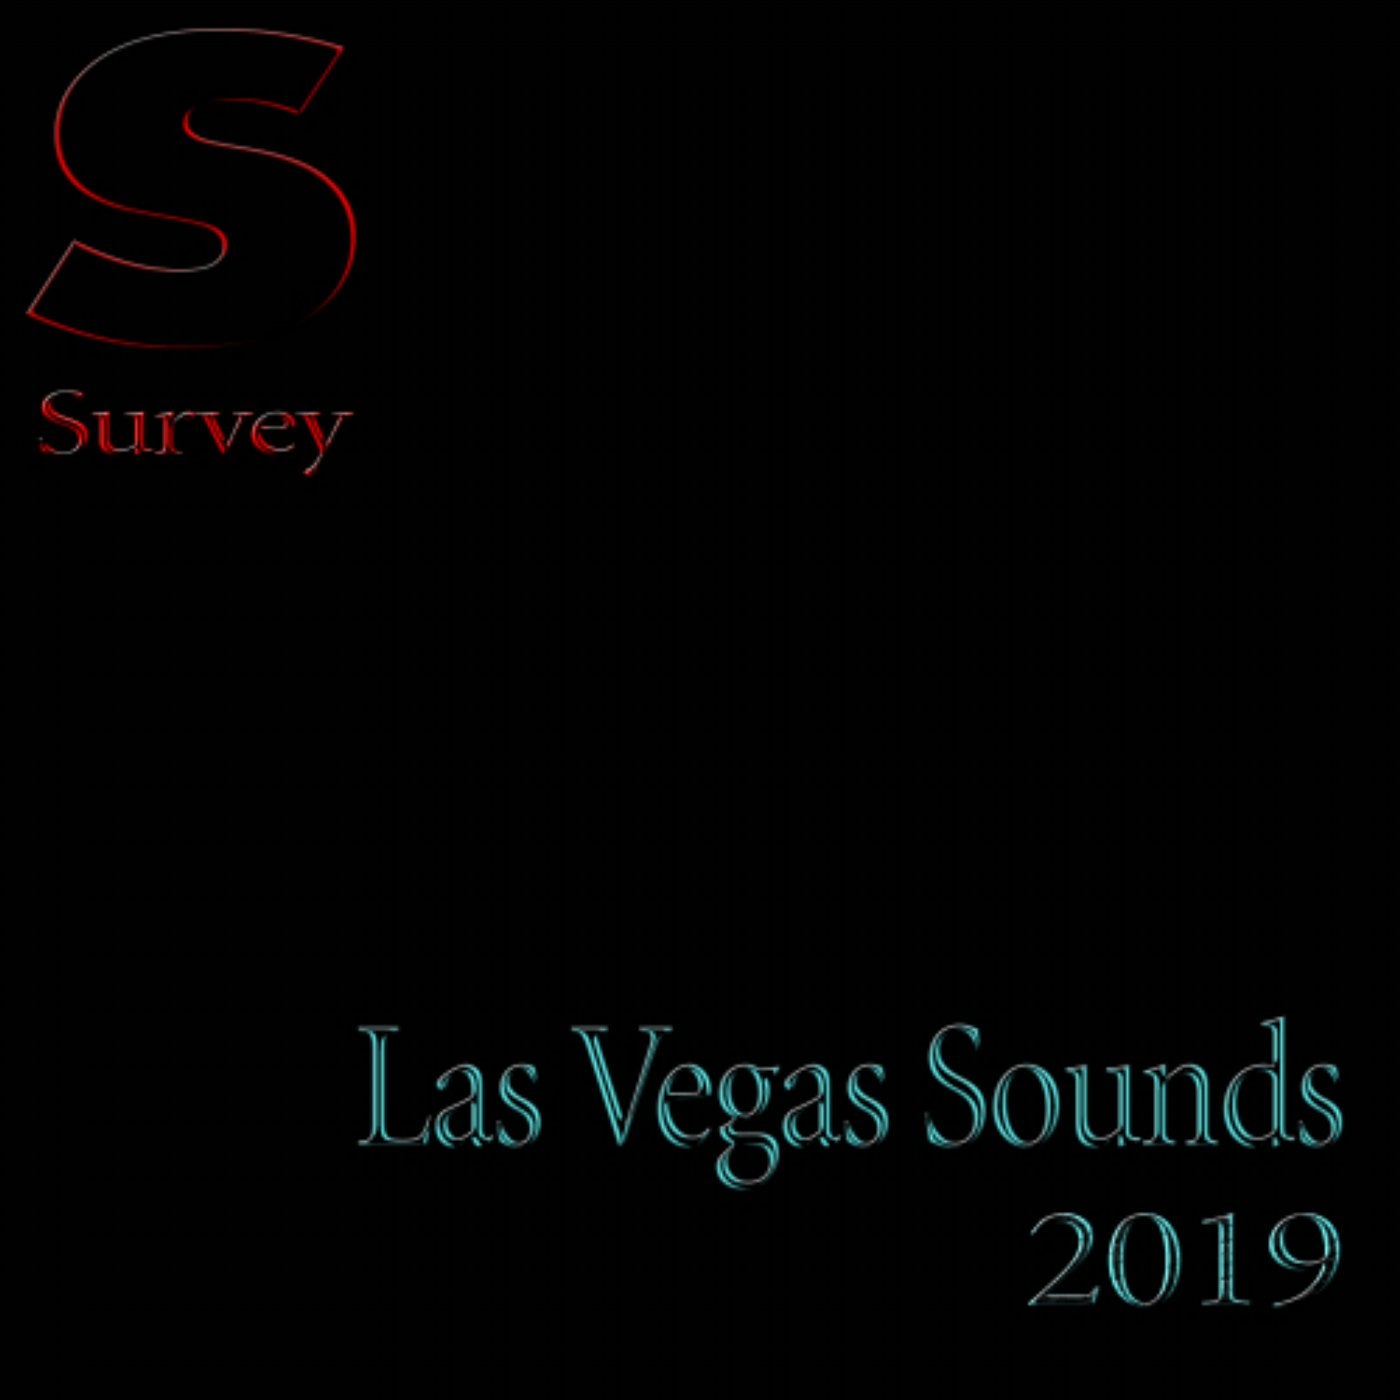 Las Vegas Sounds 2019